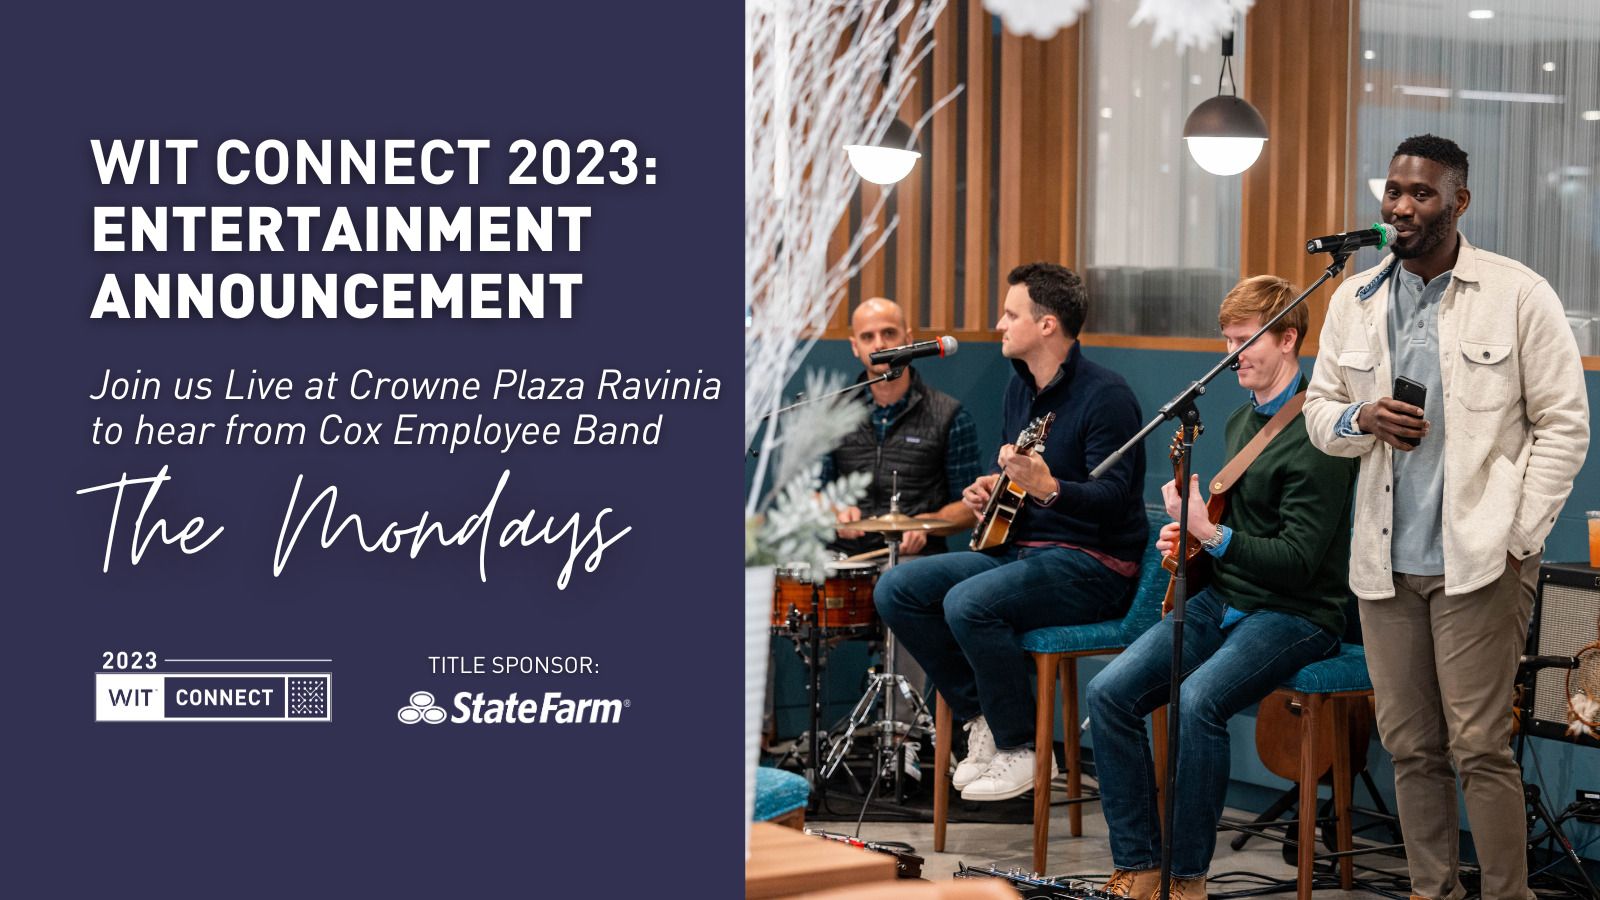 WIT Connect 2023: Entertainment Announcement - Dave Fenley - Women